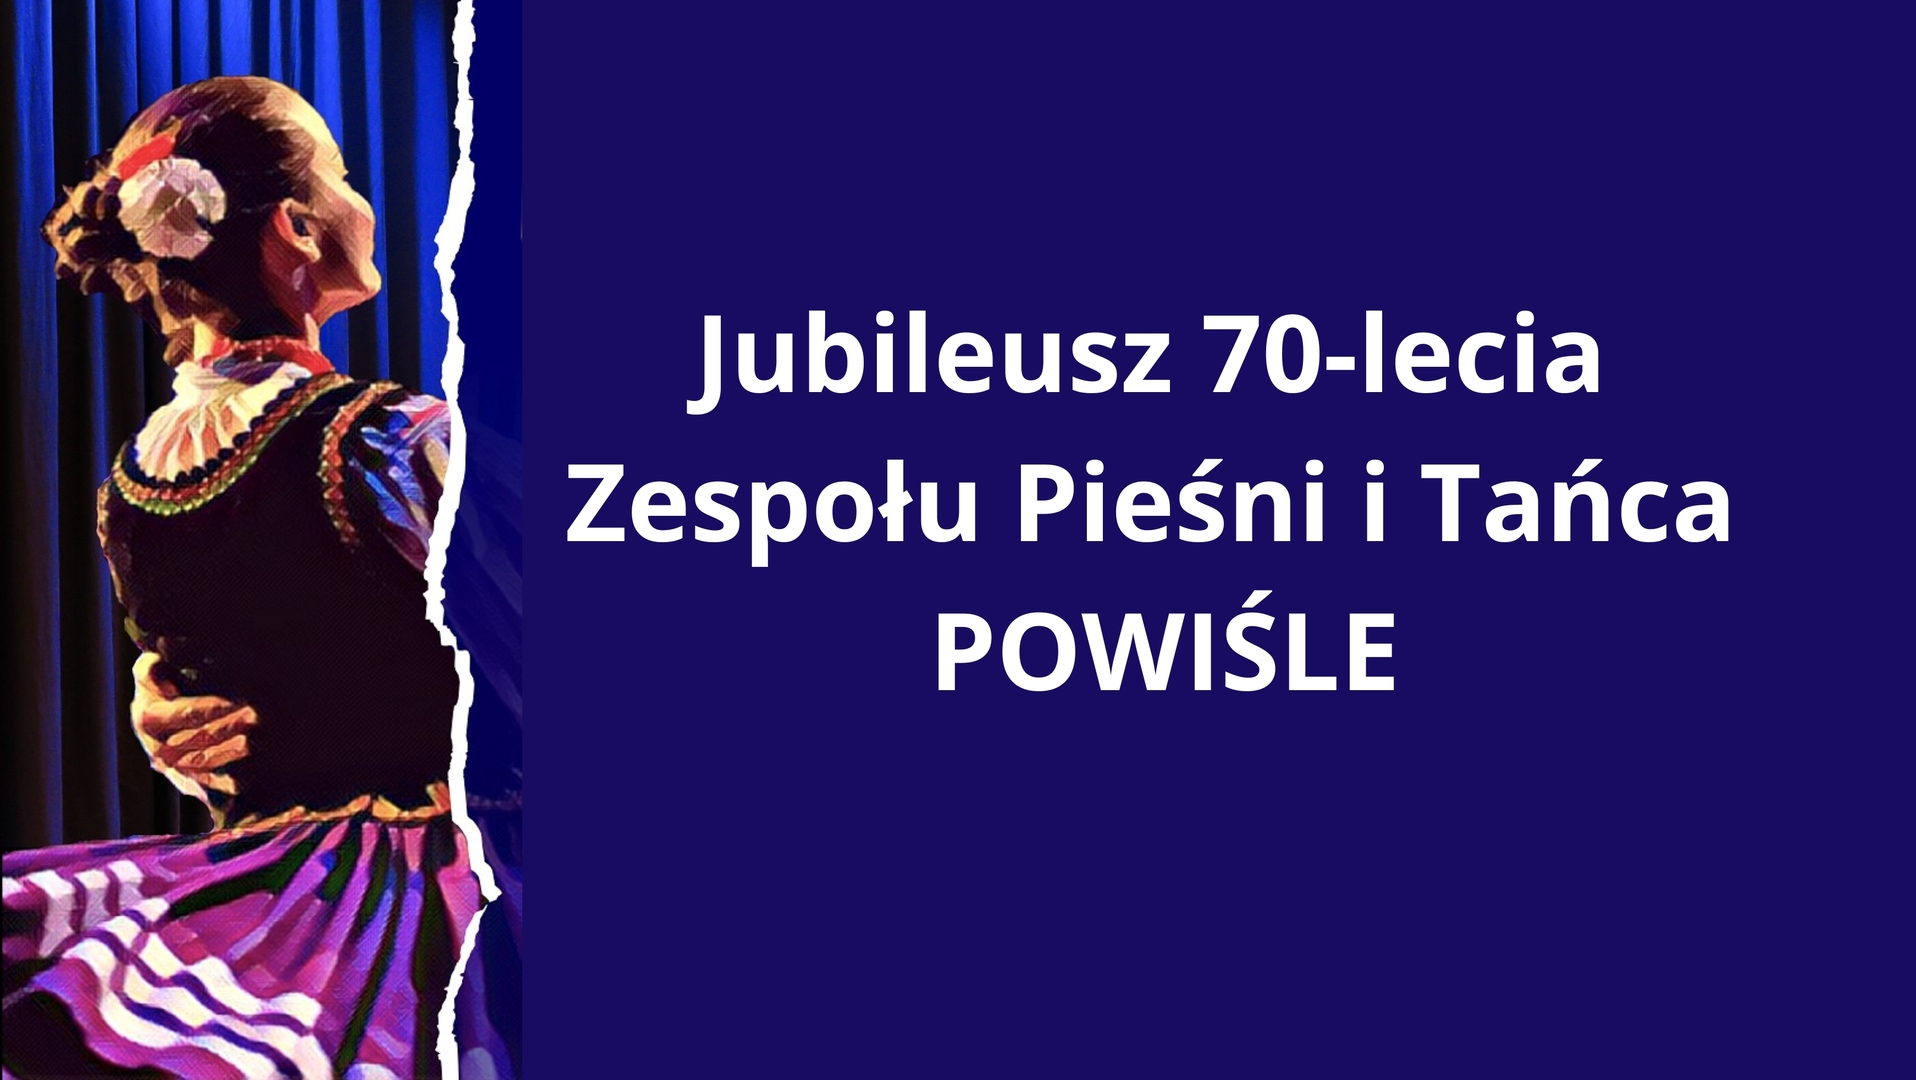 Jubileusz 70-lecia Zespołu Pieśni i Tańca POWIŚLE.jpg